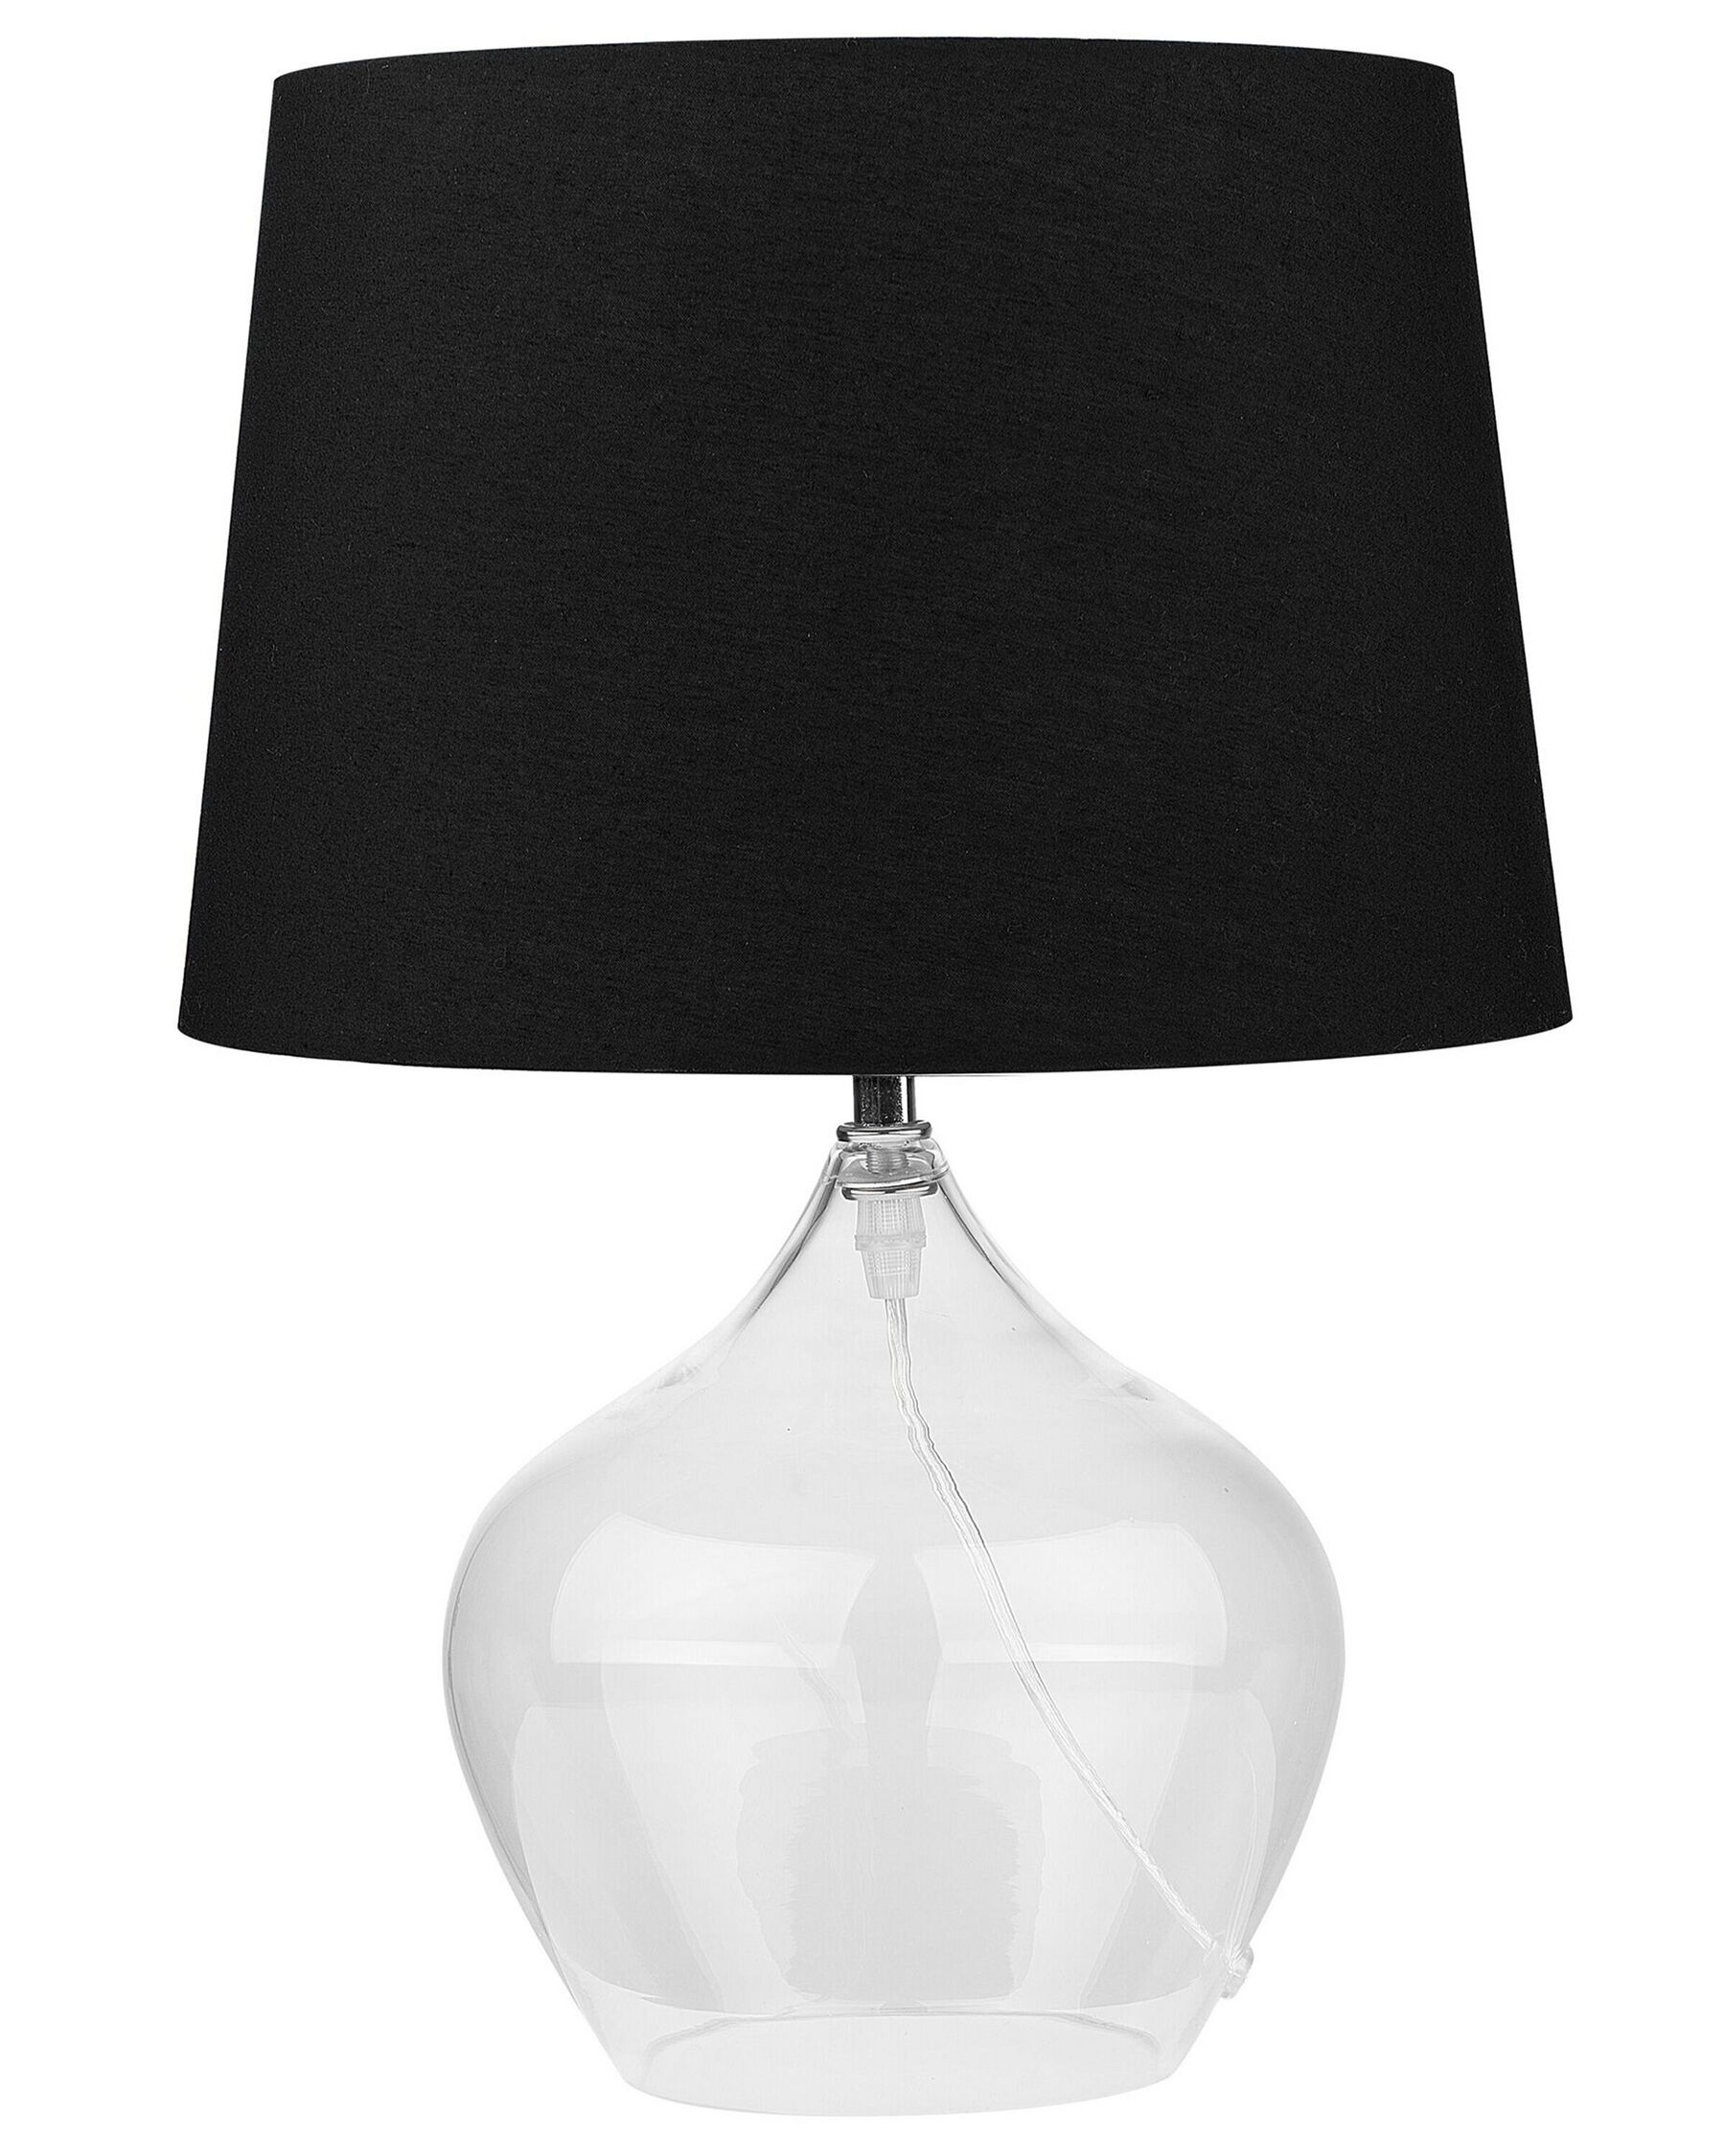 Tischlampe Glas transparent / schwarz 45 cm Trommelform OSUM _726604